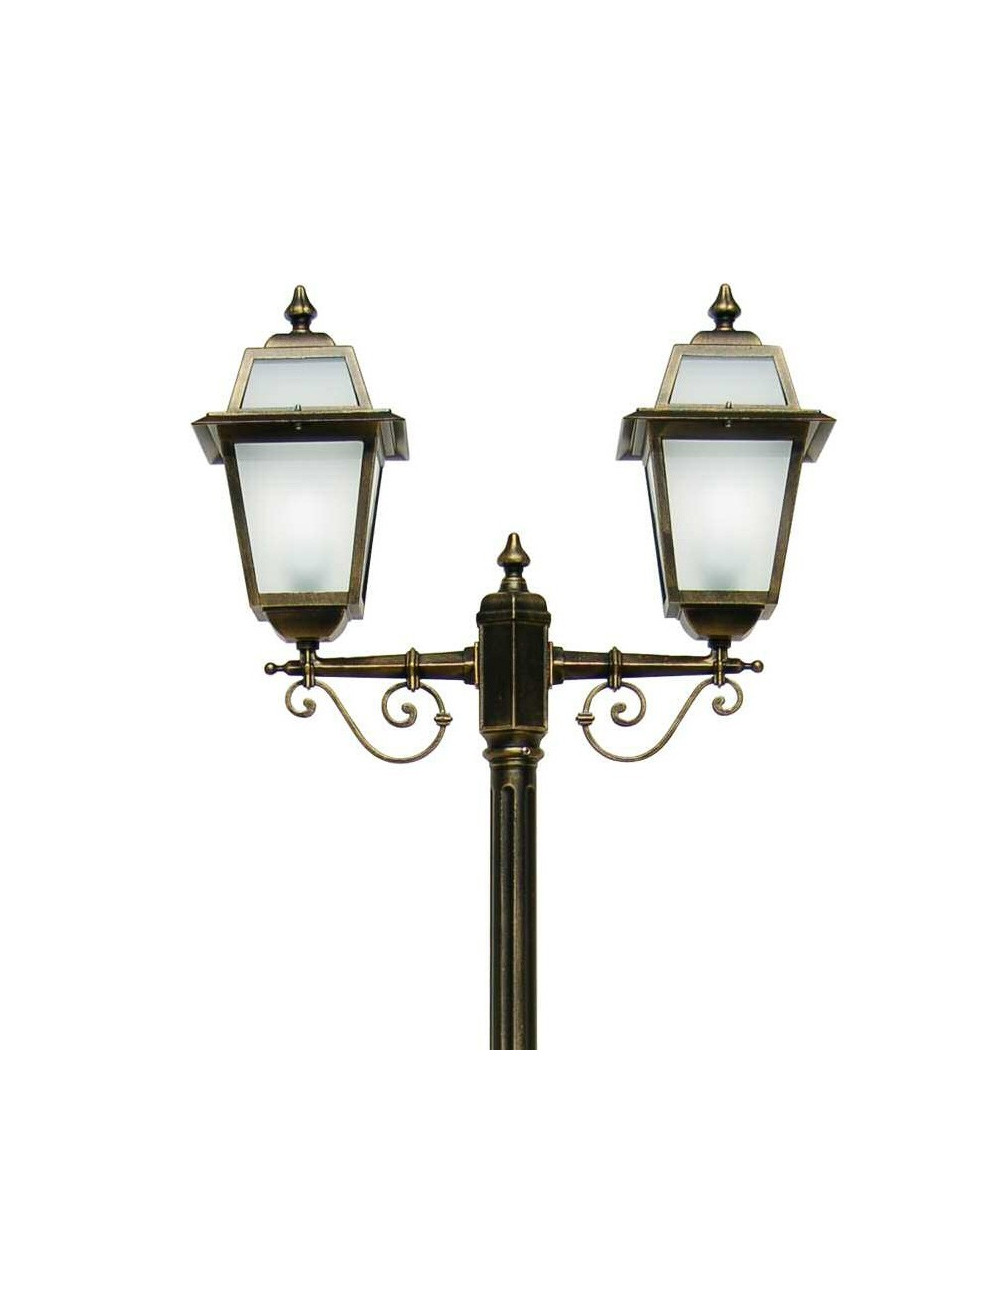 ARTEMIDE Palo Street lamp Classic Lantern Outdoor Garden Lighting